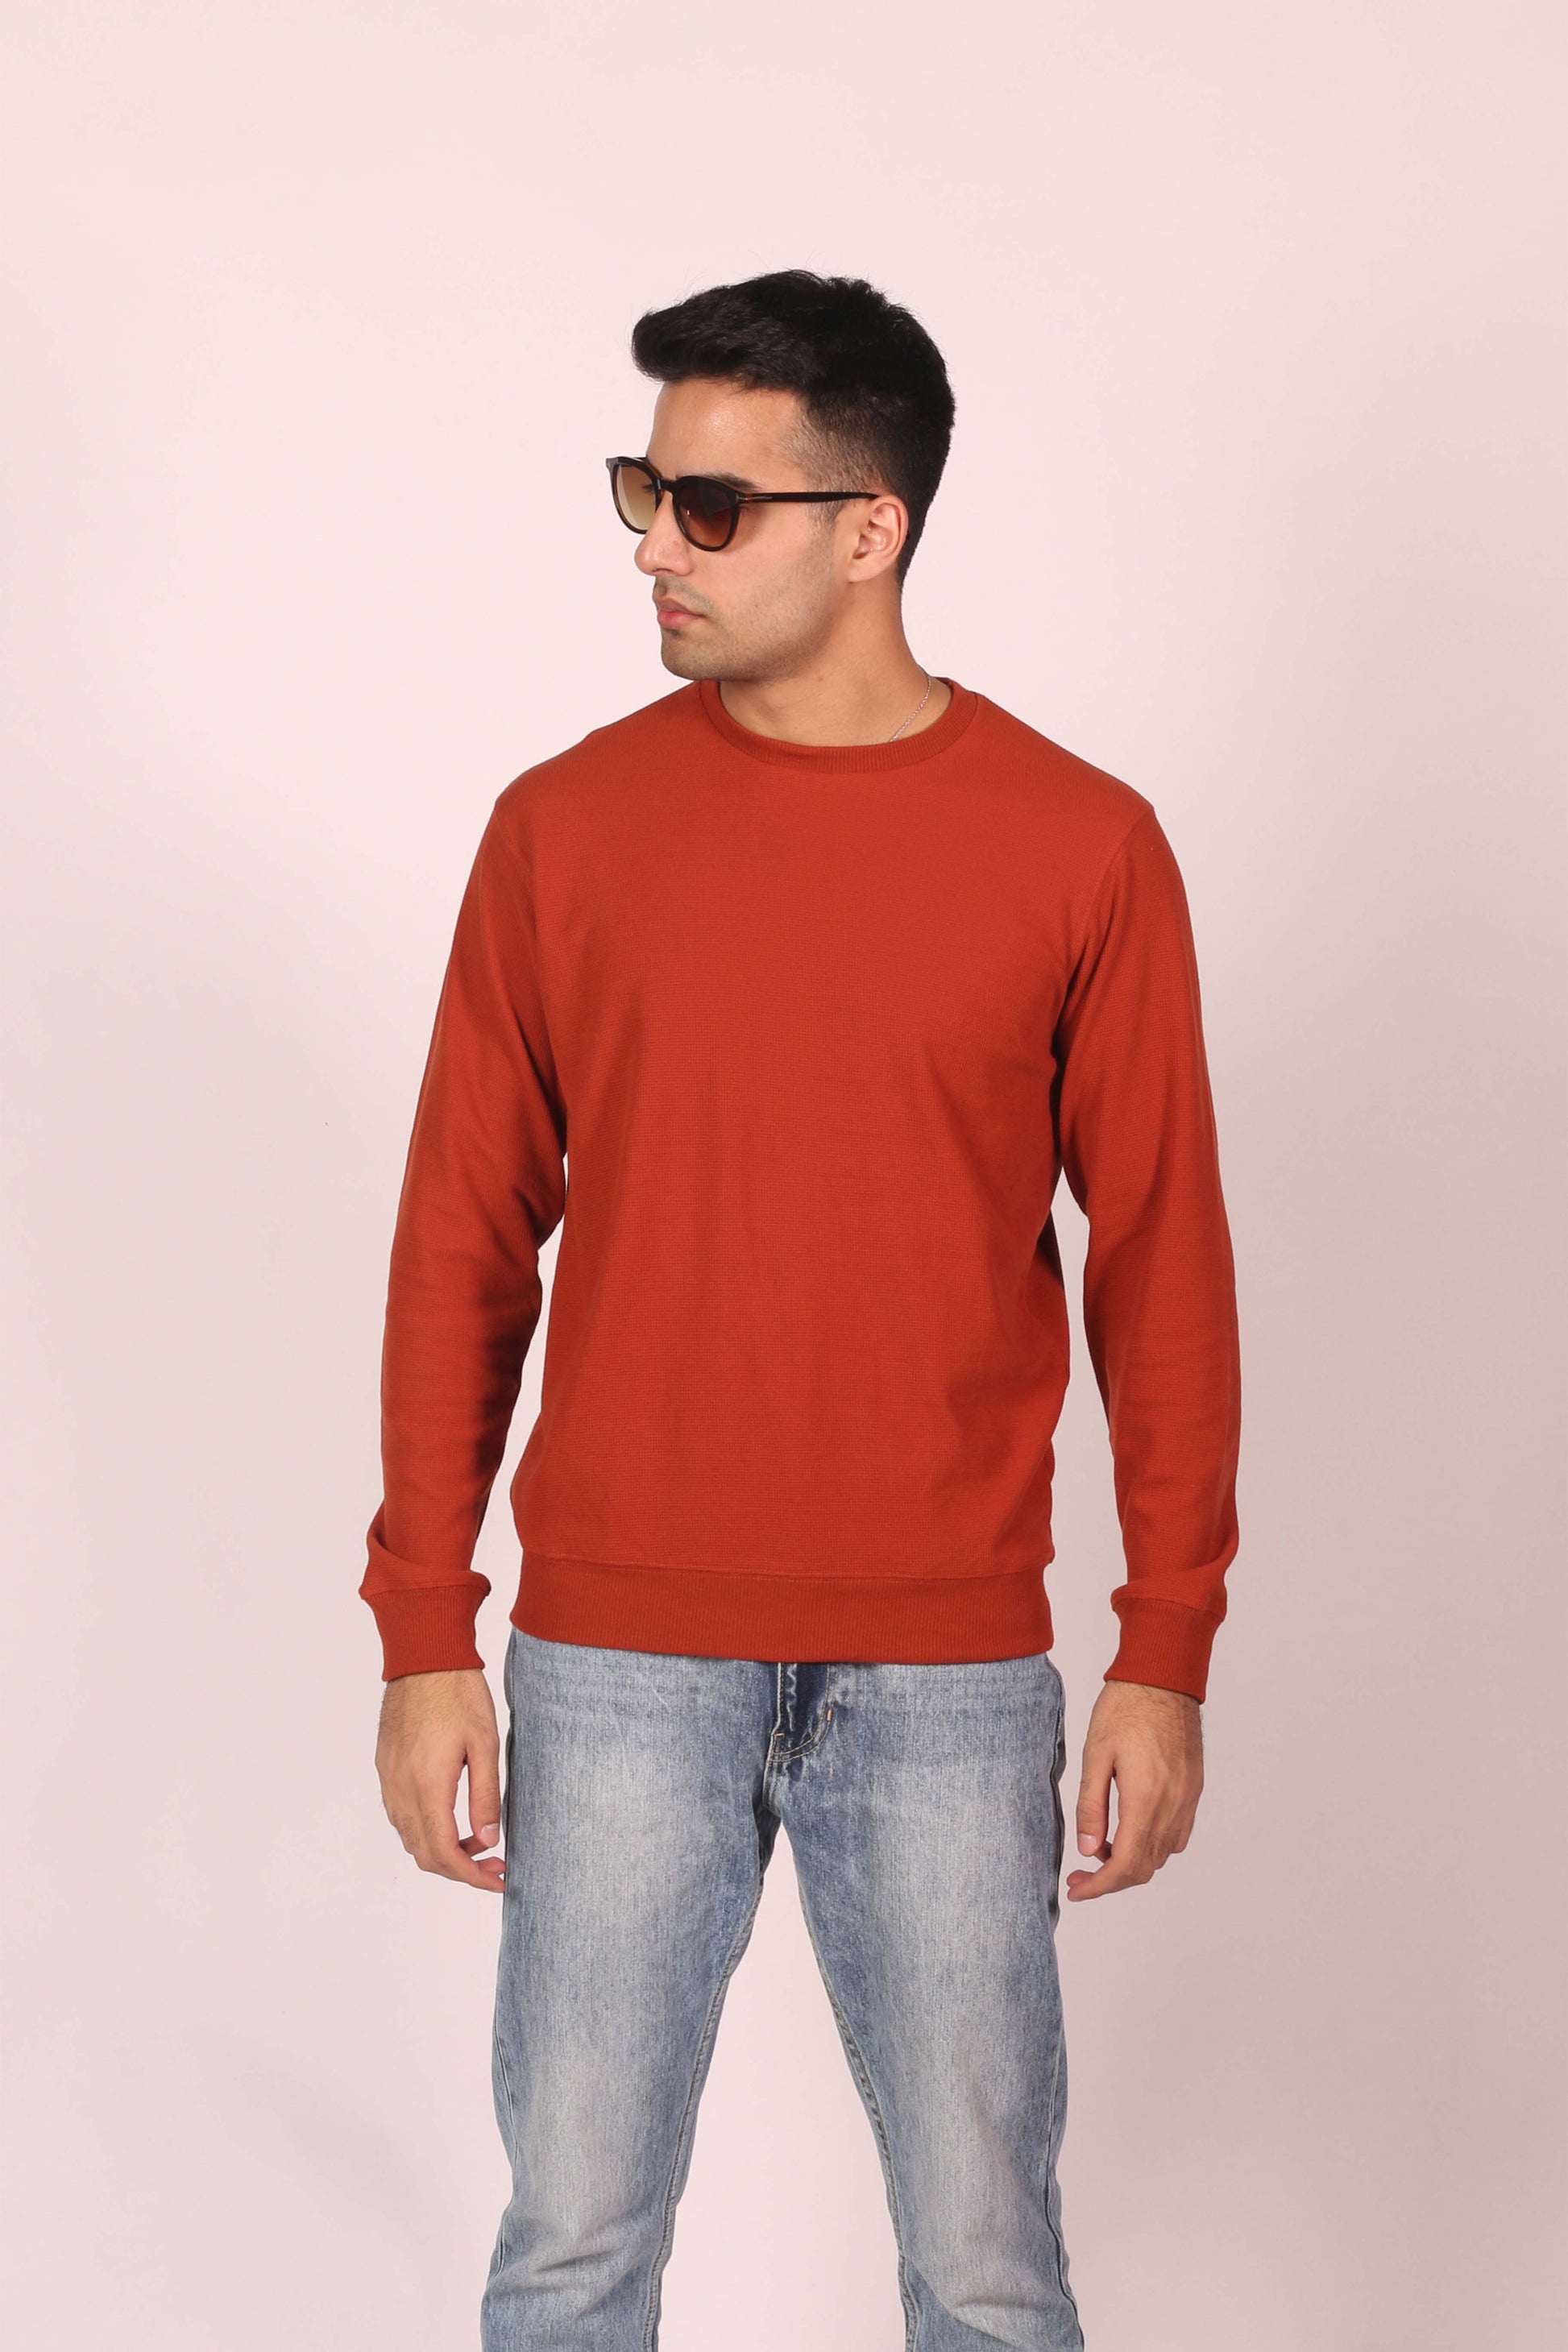 Rust Orange Weave Knit Sweatshirt (6891911086259)